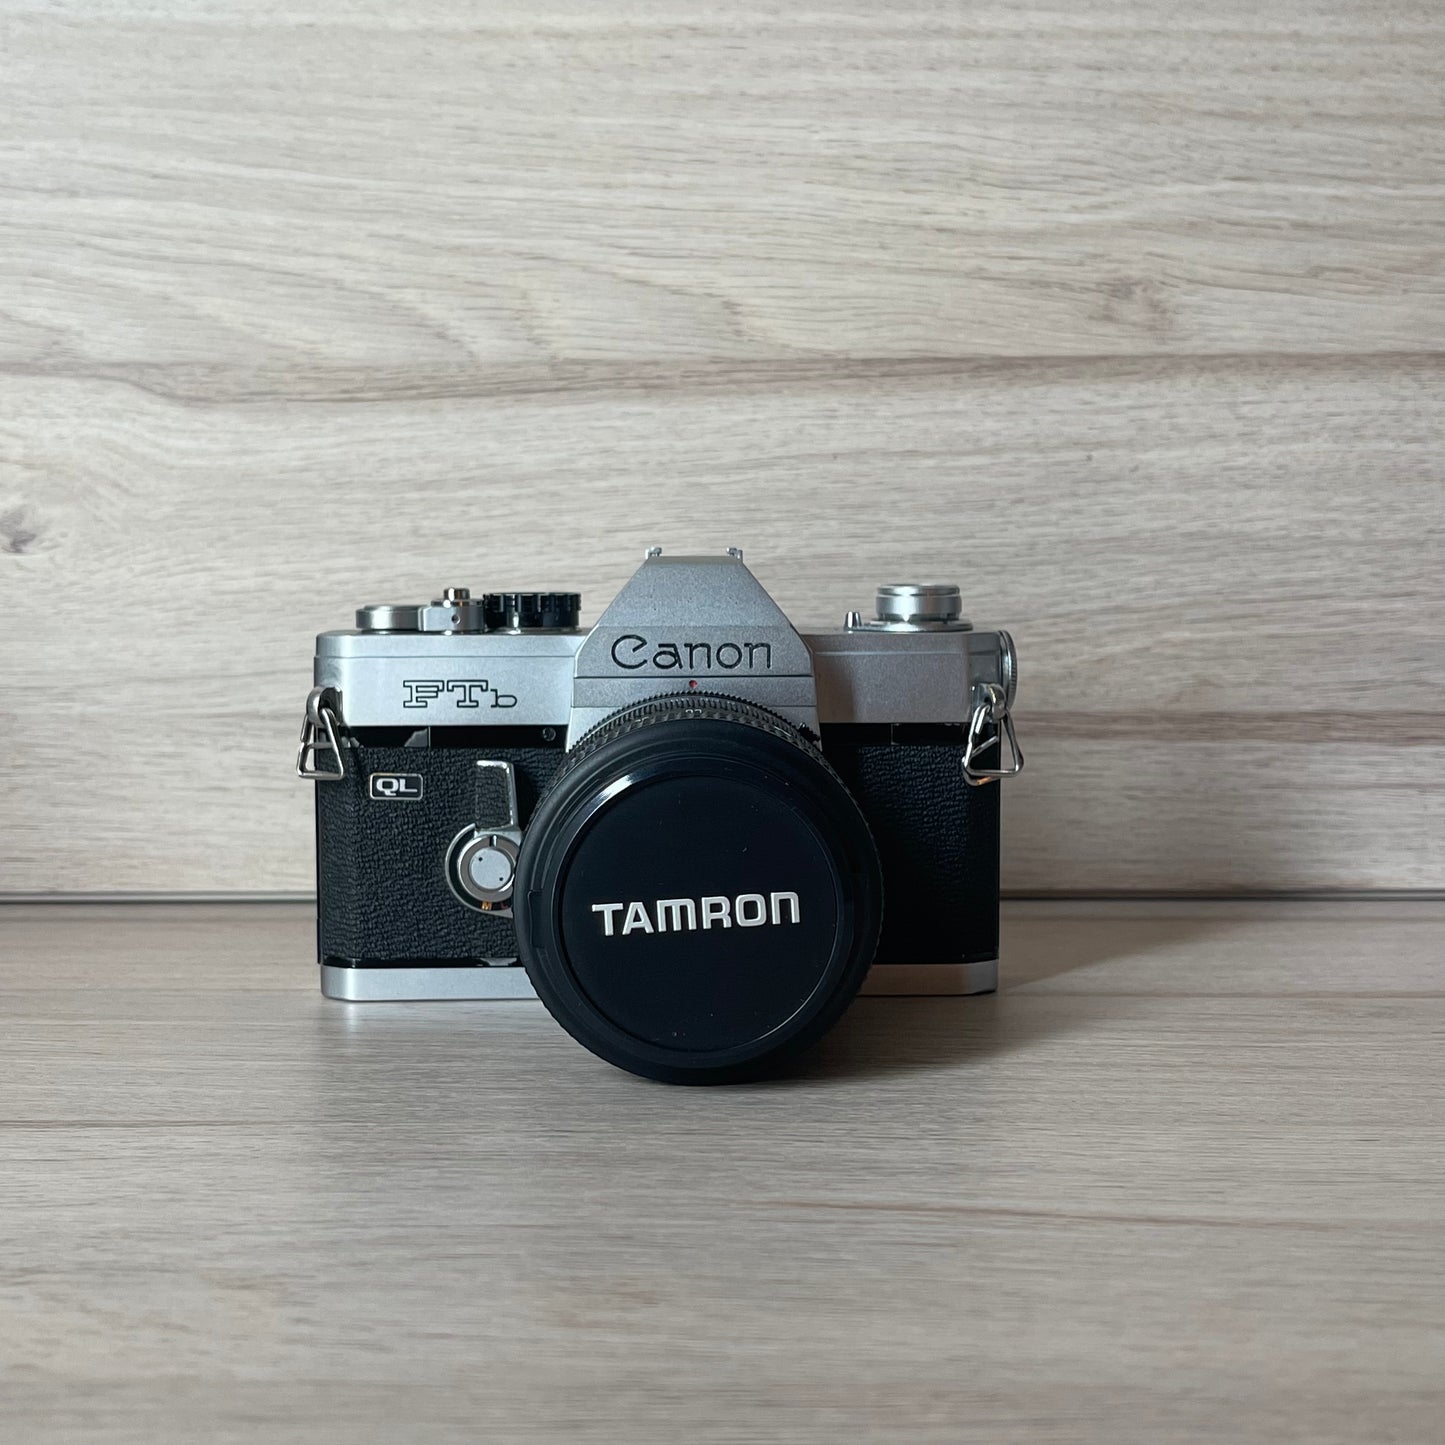 Canon FTb w/ Tamron 28-70mm